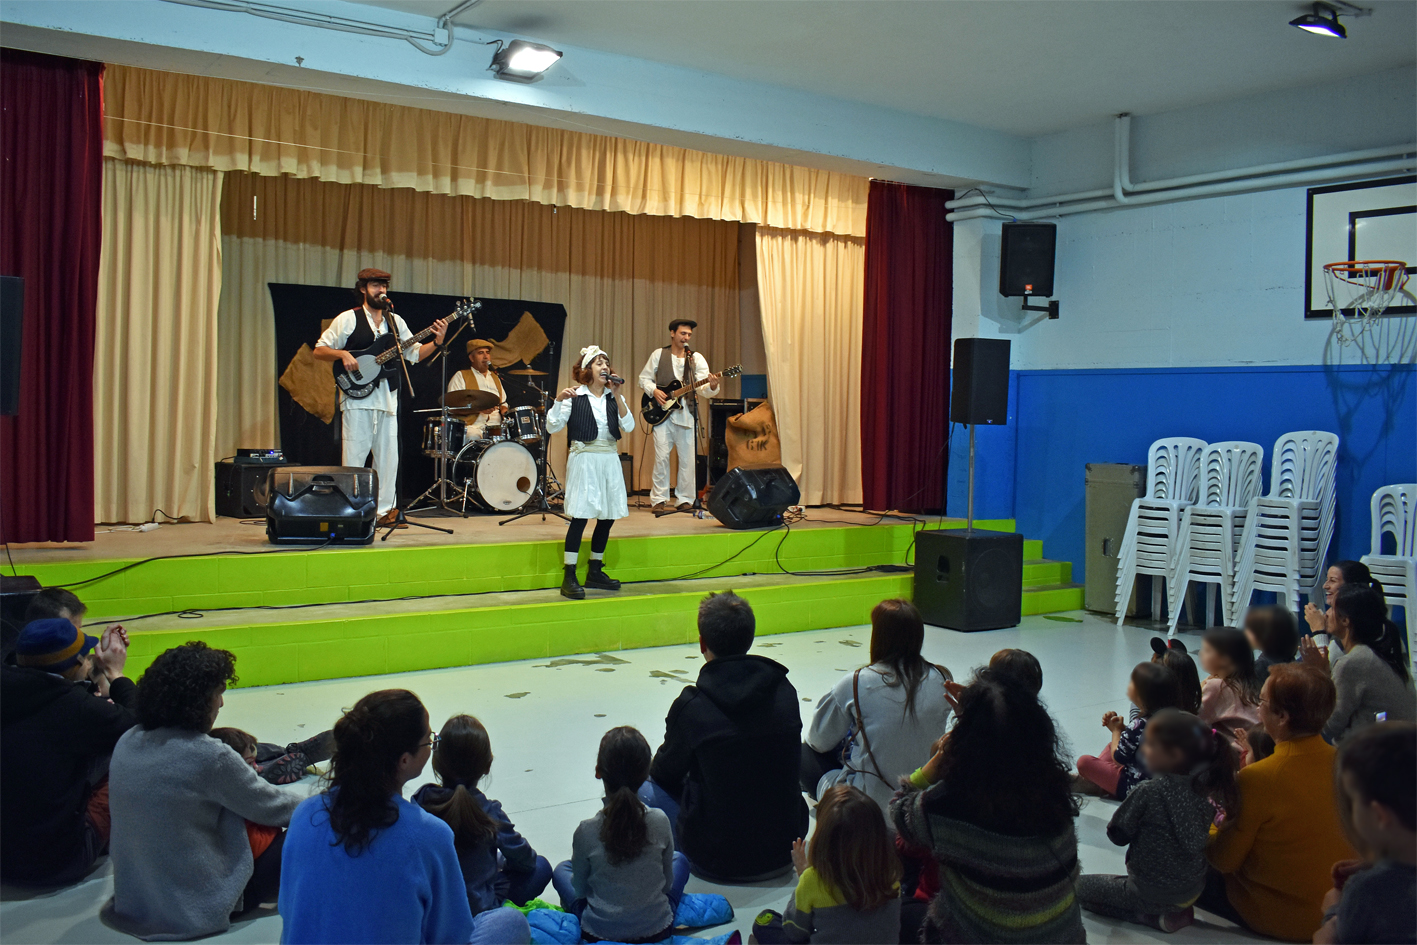 Espectacle infantil 'Pell de Gallina' de SAC Espectacles a lâ€™Escola Francesc MaciÃ , dins de la Festa de Sant SebastiÃ .